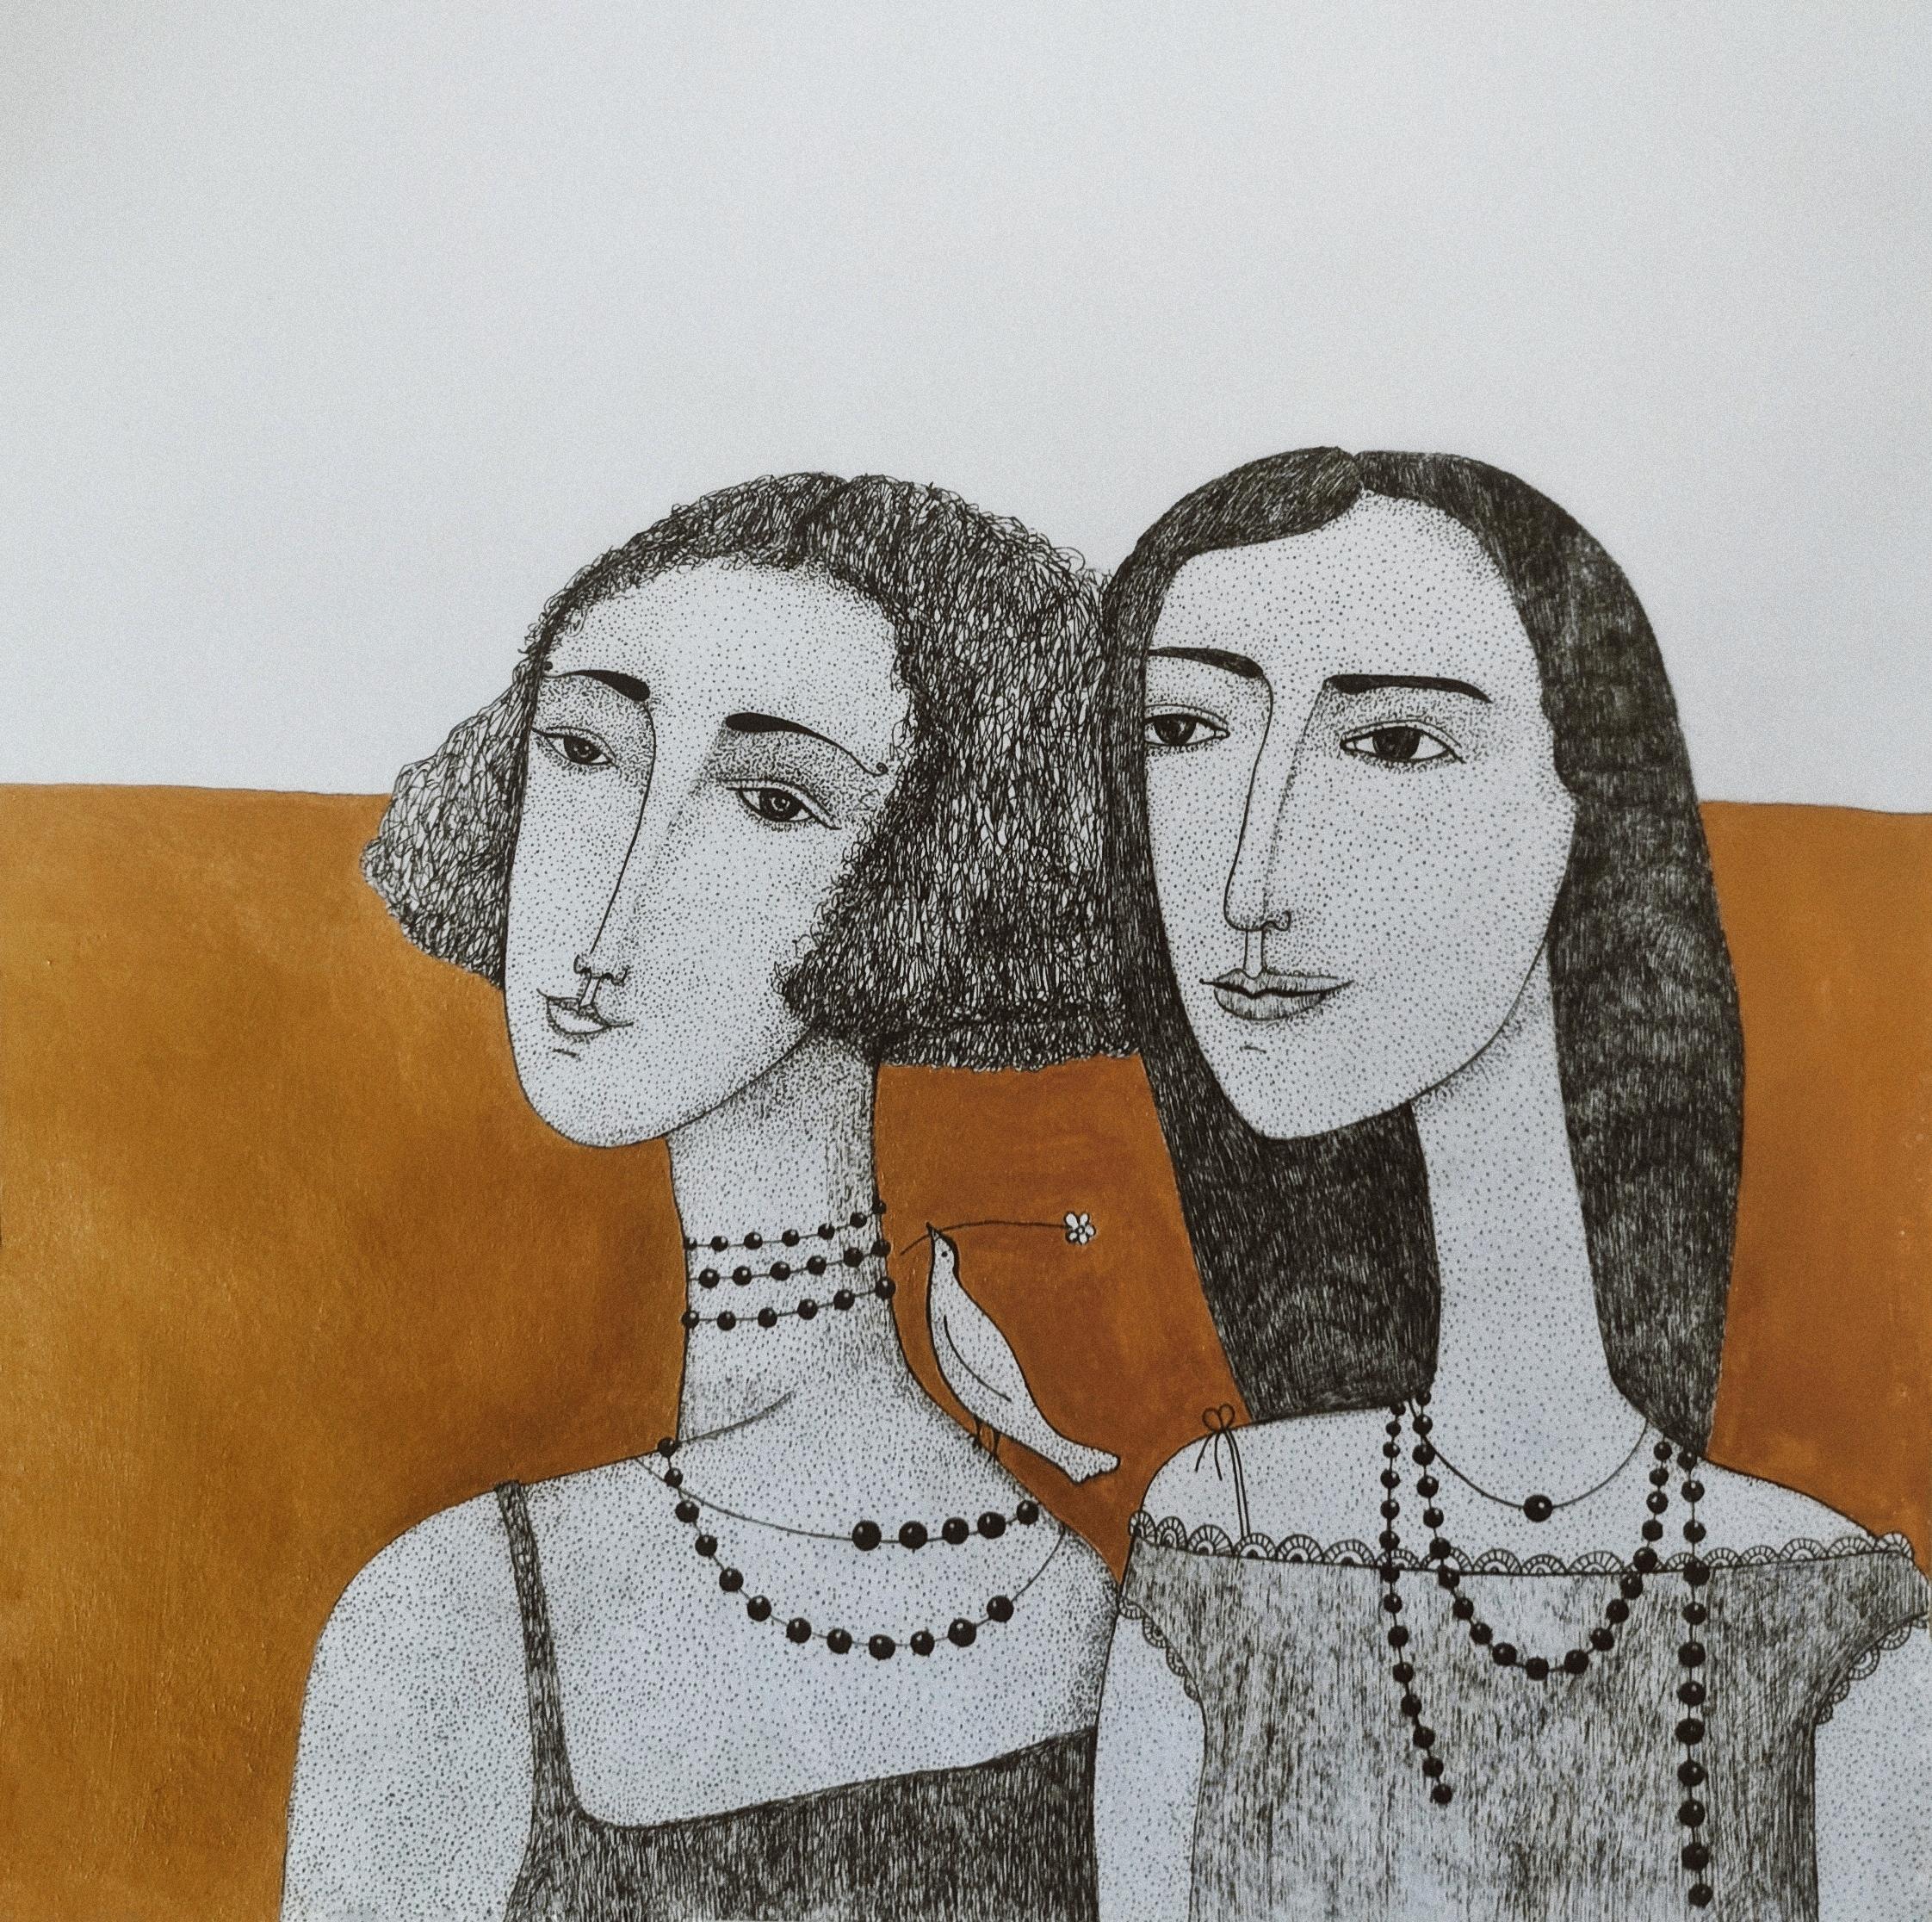  Girlfriends - Art by Irina Yakovleva